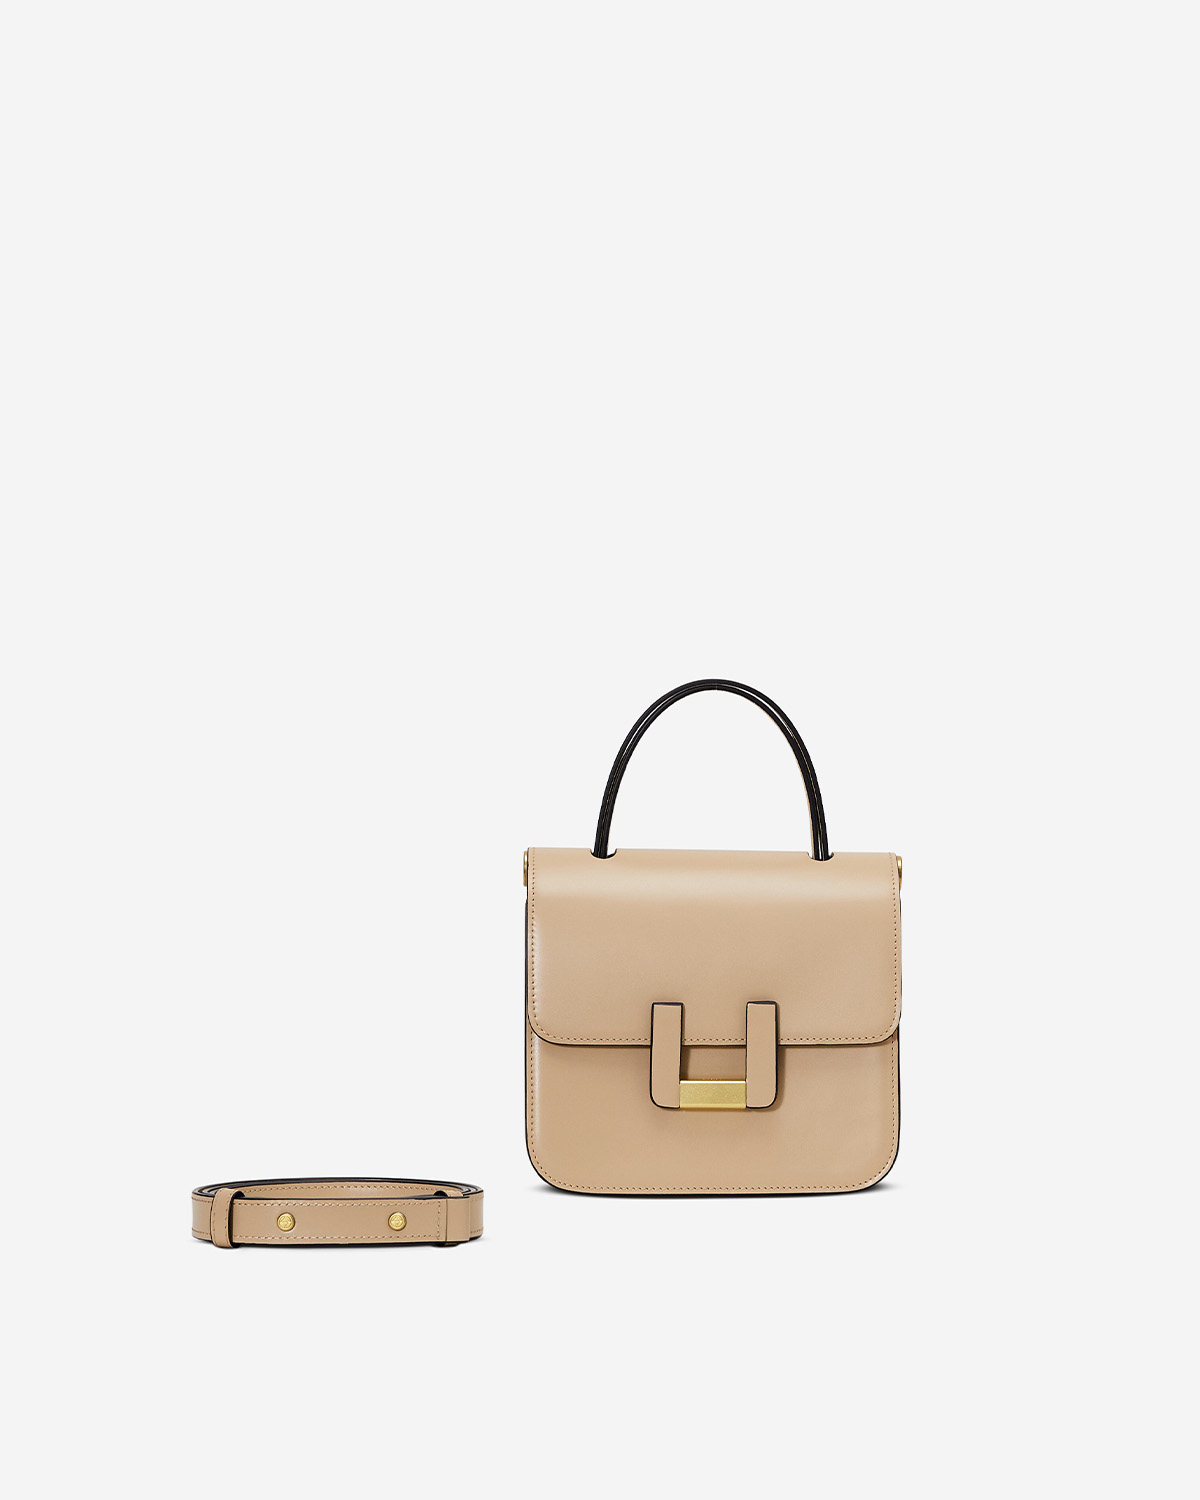 กระเป๋าคล้องไหล่ Shoulder bag หนังแท้ VERA U Edition Letterbox สี Gobi Desert